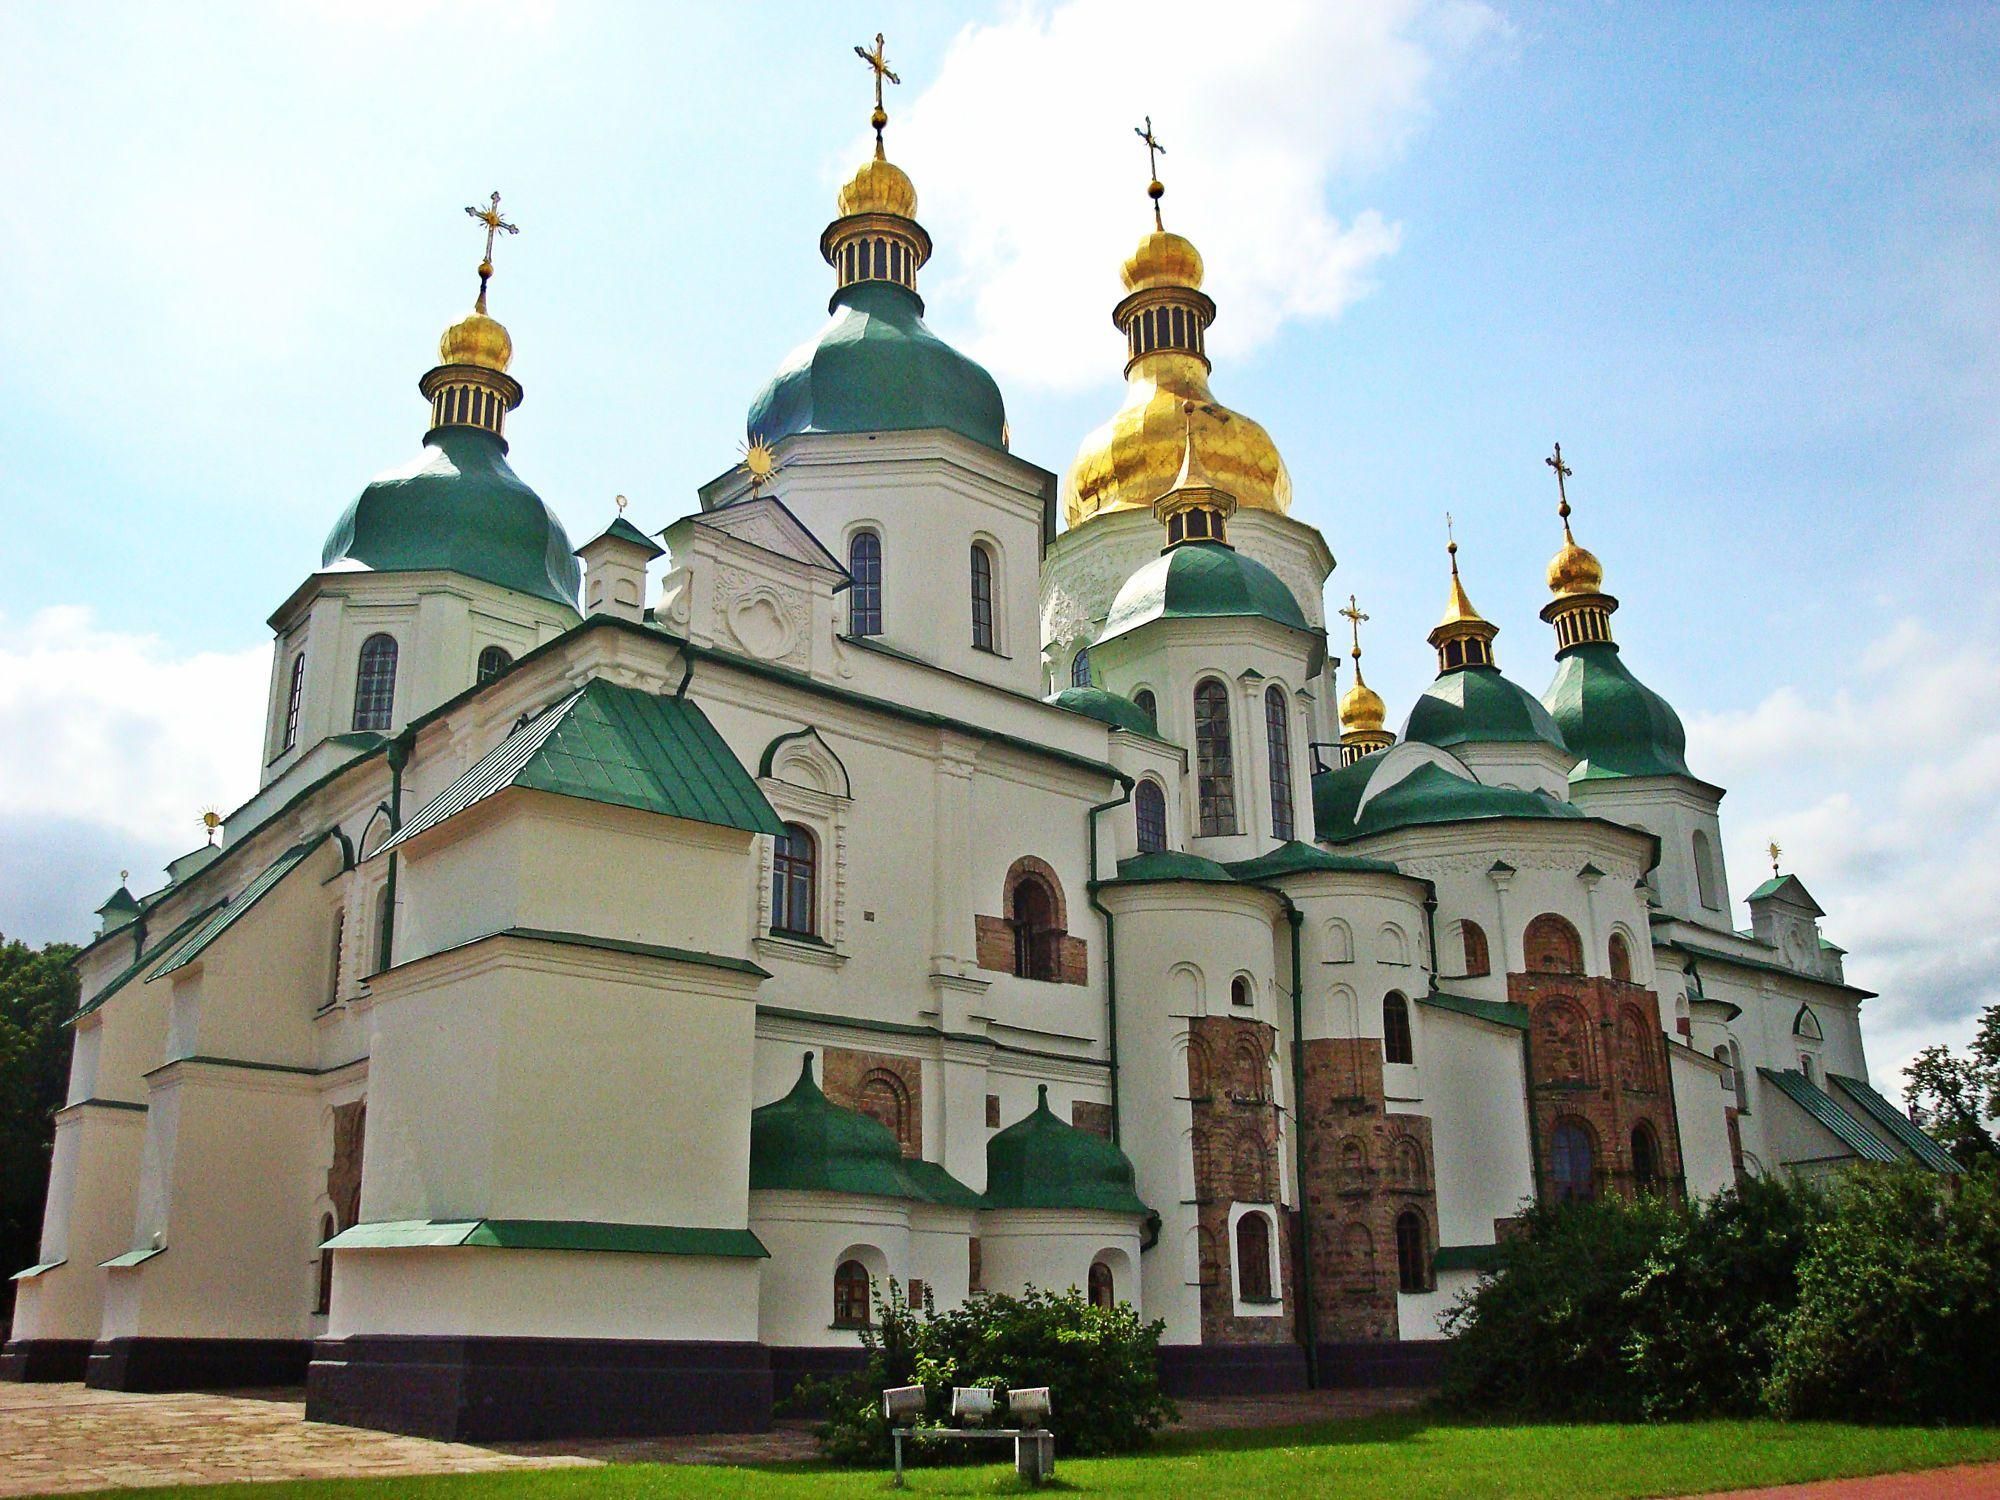 Софиевский собор в Киеве: описание, история, факты, фото